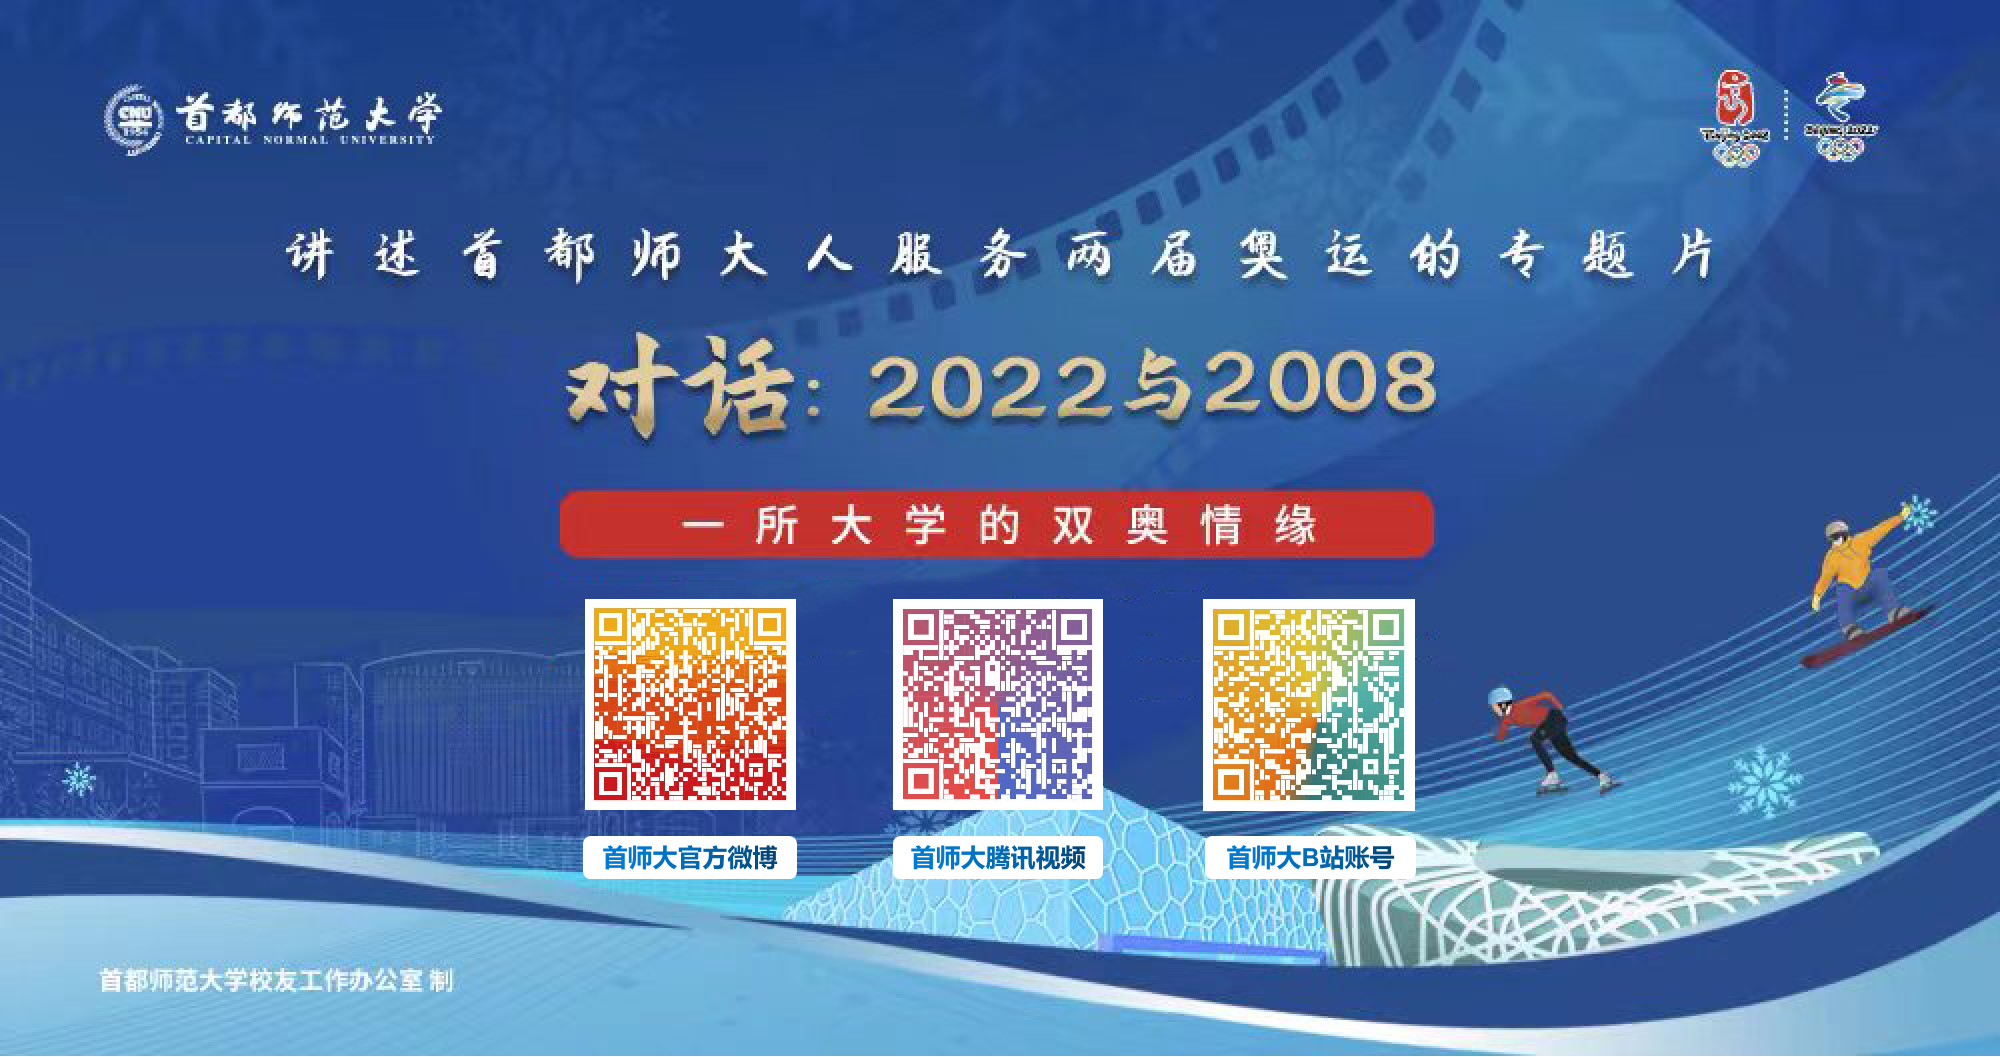 首师大奥运专题片于北京冬奥会闭幕一周年之际在北京广播电视台播出